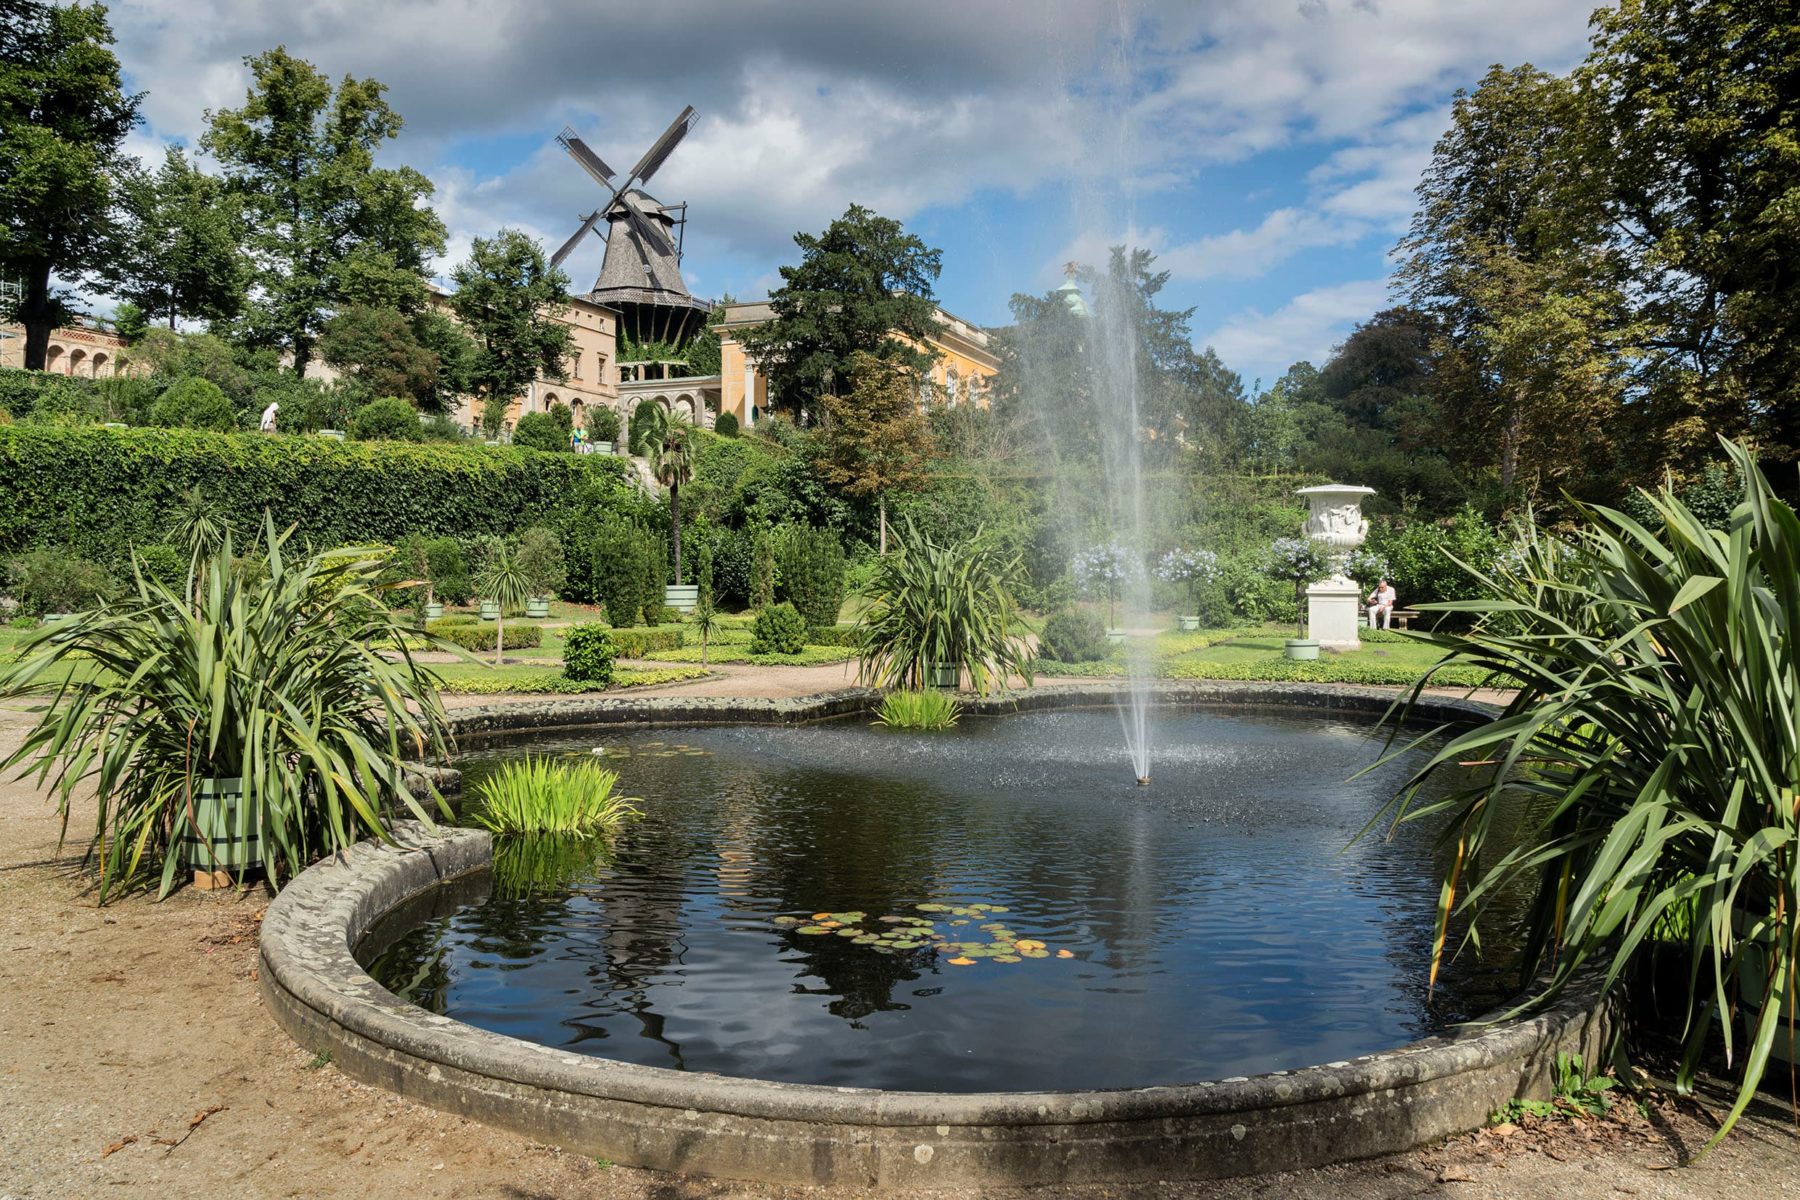 Ein Teich mit einem Springbrunnen, Pflanzenkübel stehen rundherum, im Hintergrund steht eine Windmühle